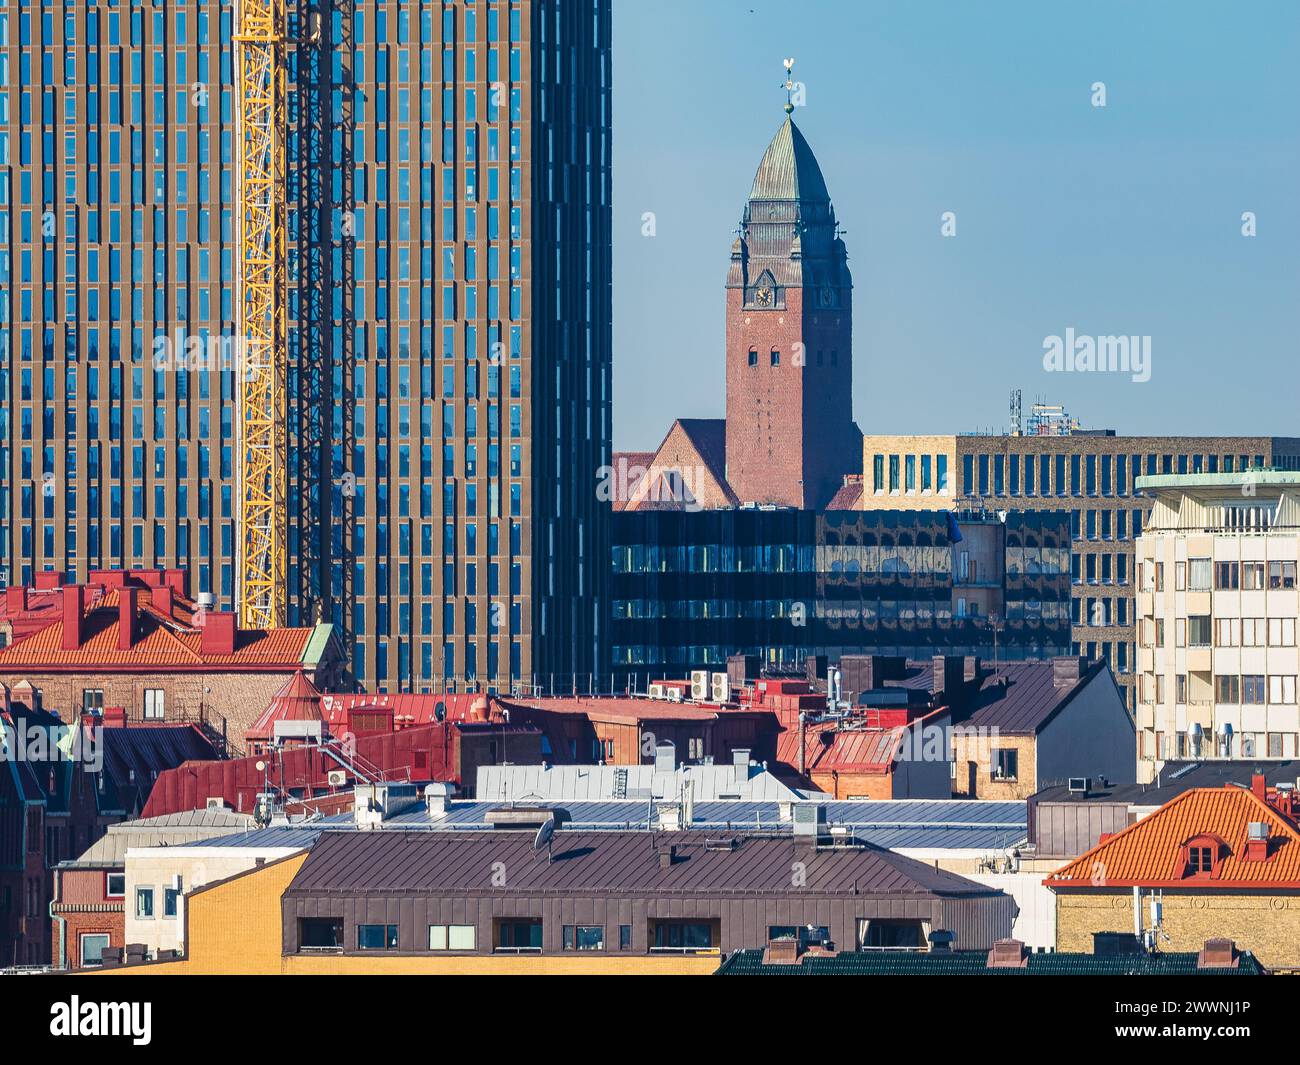 Die Skyline von Göteborg wird von einer Mischung aus architektonischen Stilen unterbrochen, mit einer historischen Kirche, die zwischen modernen Hochhäusern hoch steht. Das c Stockfoto